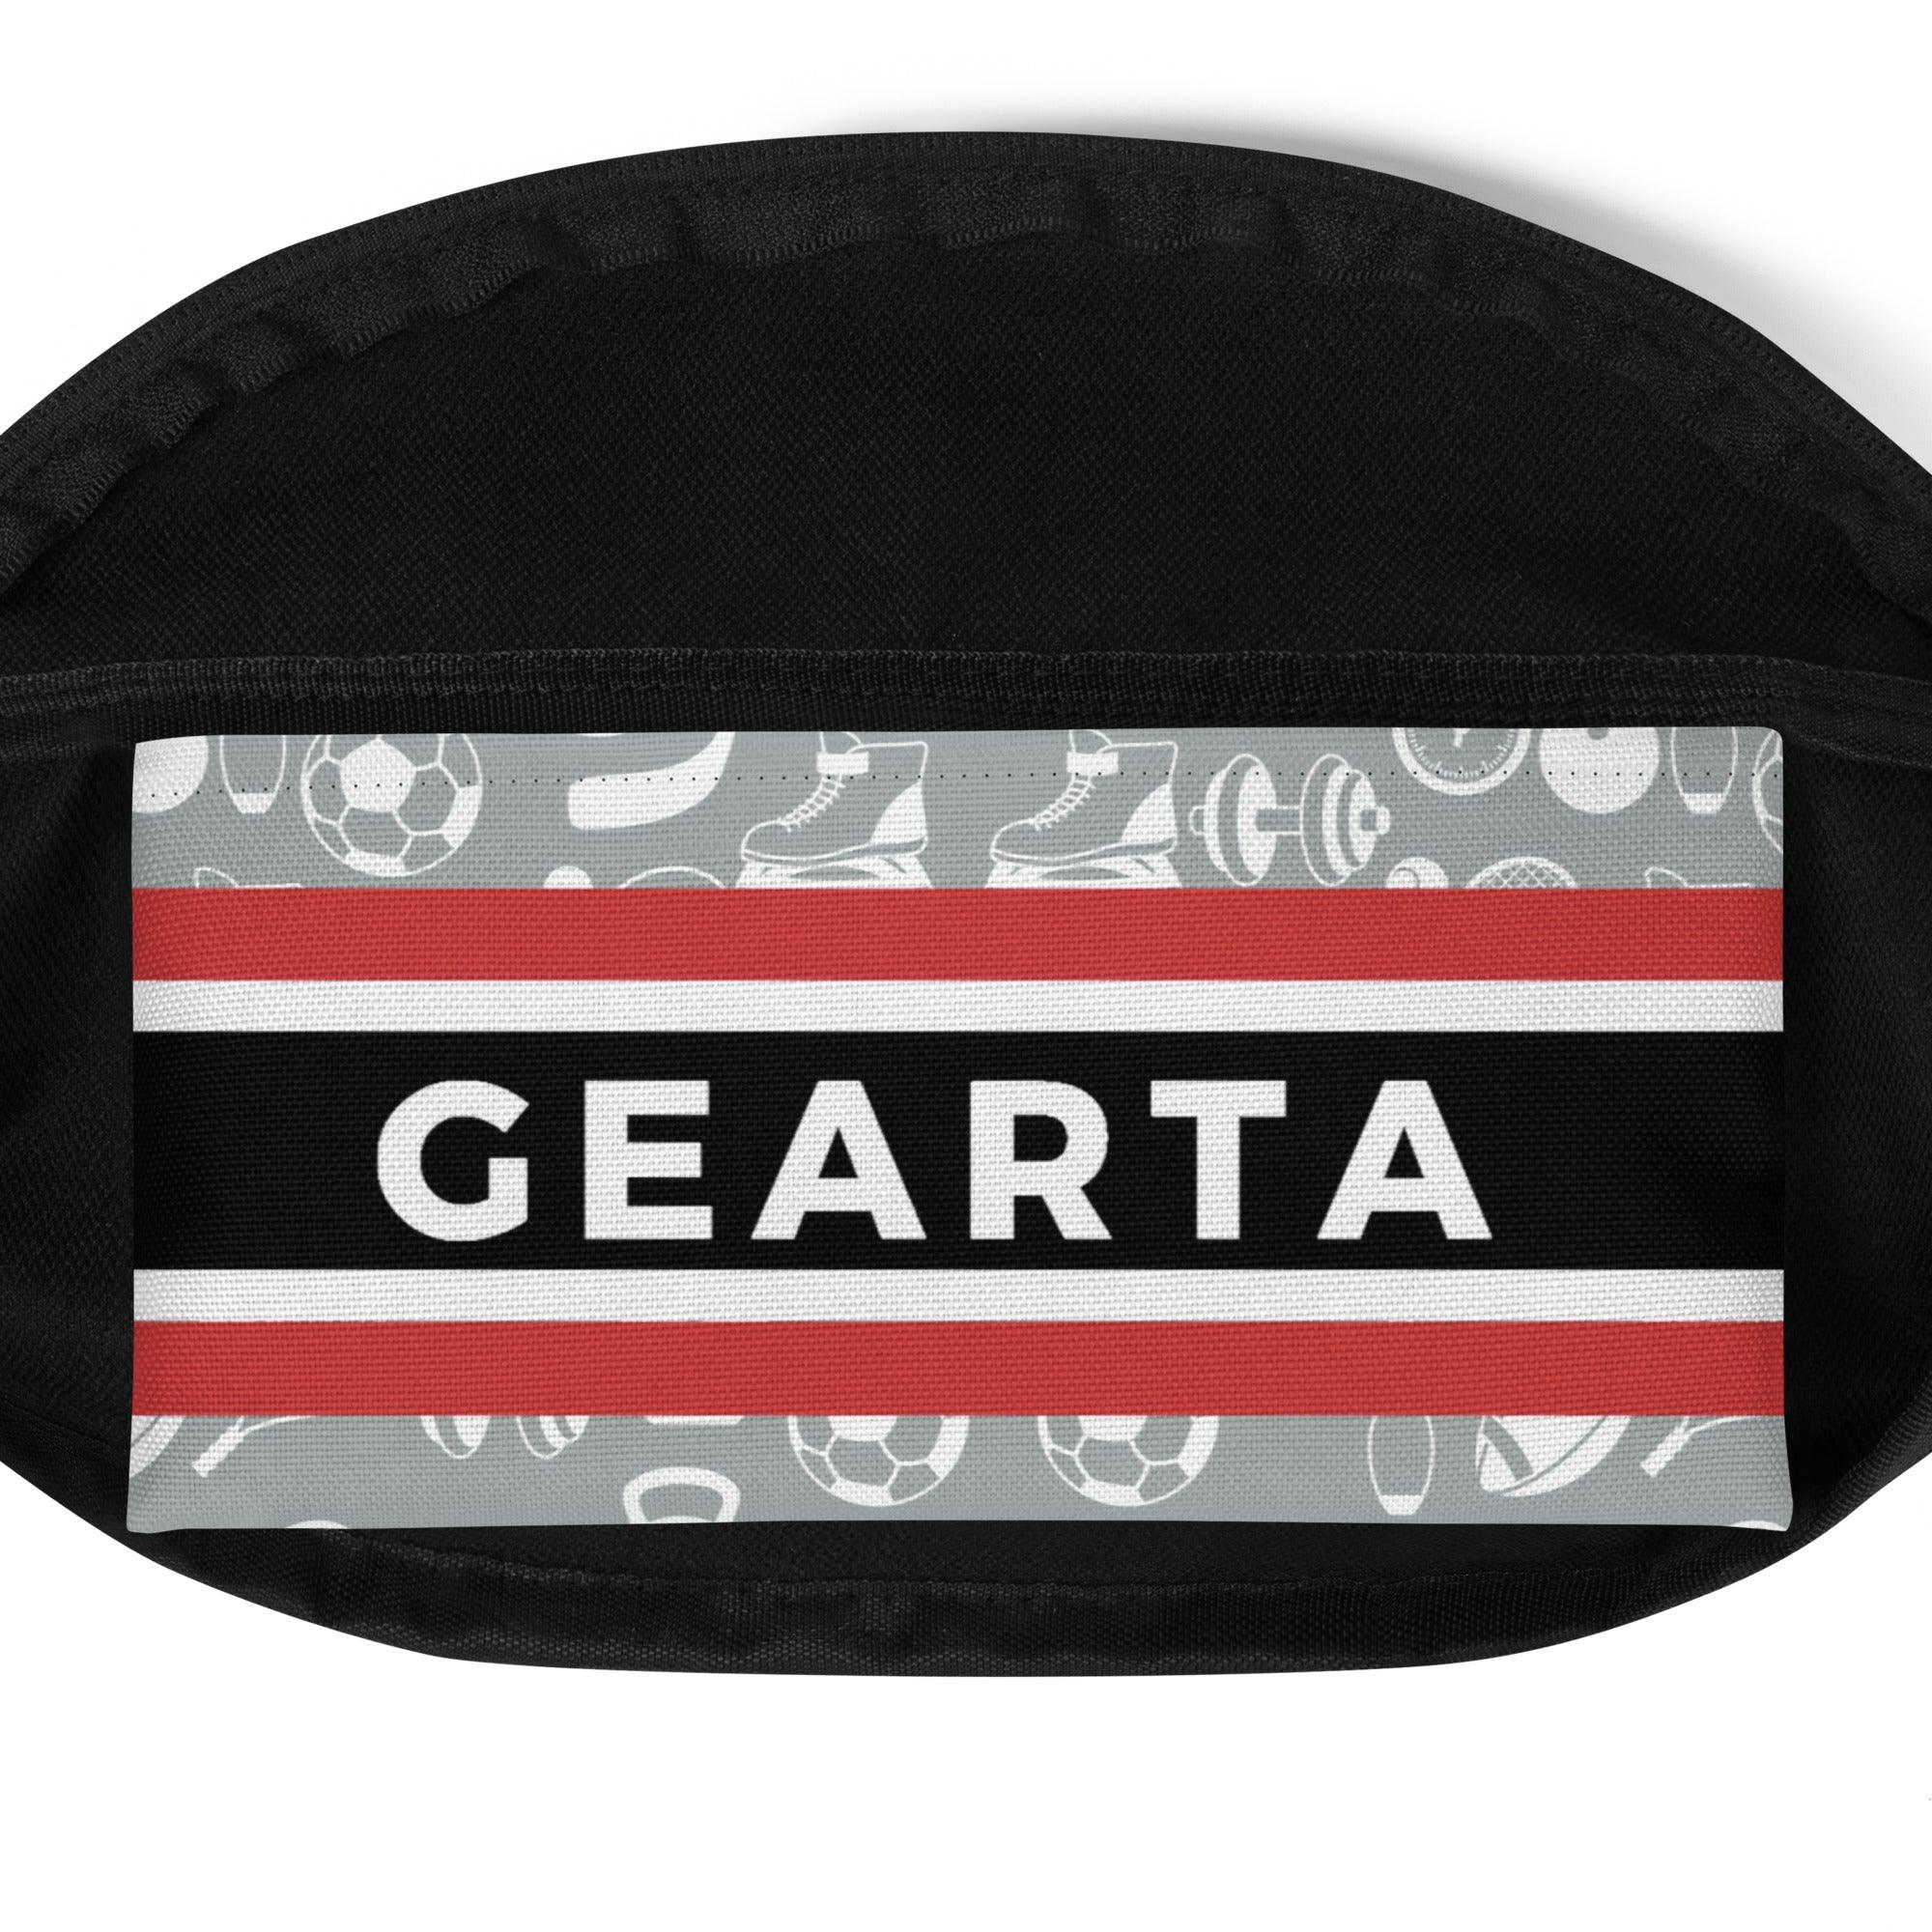 GEARTA - Sport-Designed Fanny Pack